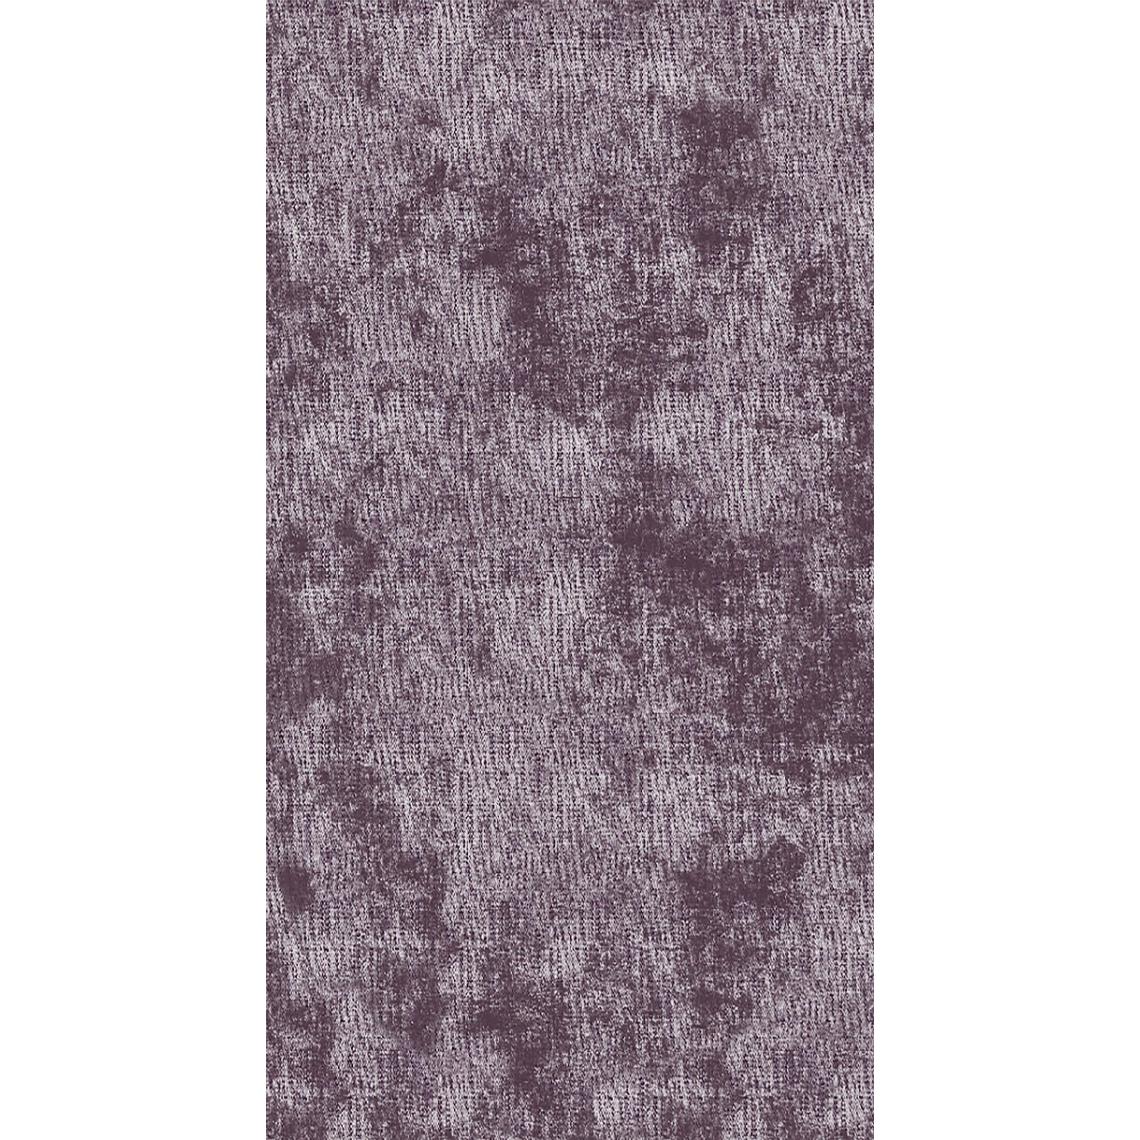 Homemania - HOMEMANIA Tapis Imprimé Purple 2 - Résumé - Décoration de Maison - antidérapants - Pour Salon, séjour, chambre à coucher - Multicolore en Polyester, Coton, 140 x 220 cm - Tapis